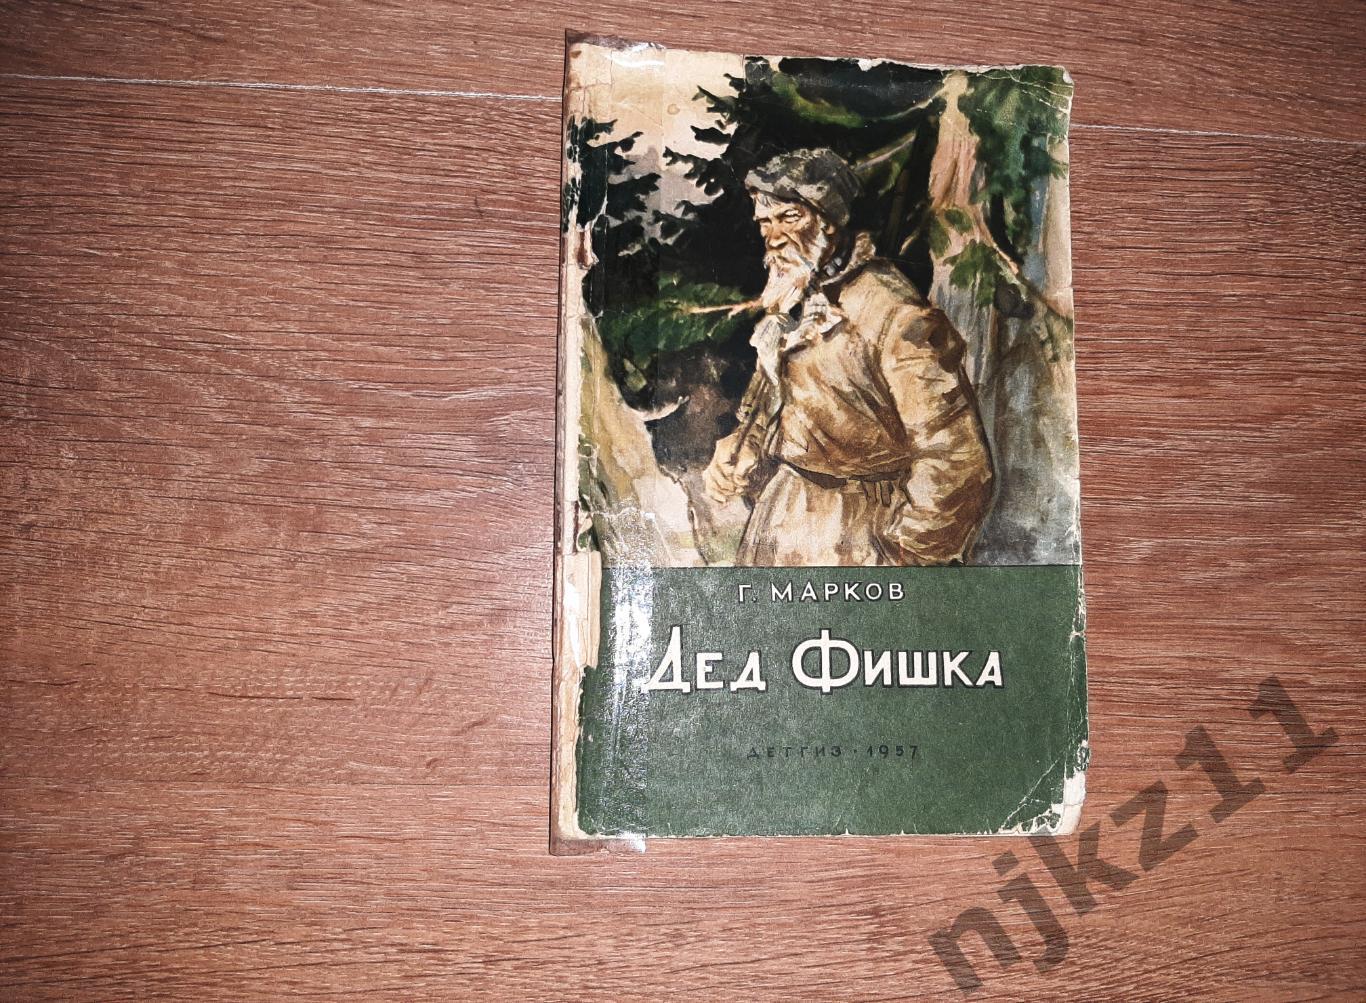 Г. Марков, Дед Фишка, 1957г (про гражданскую войну в Сибири!)